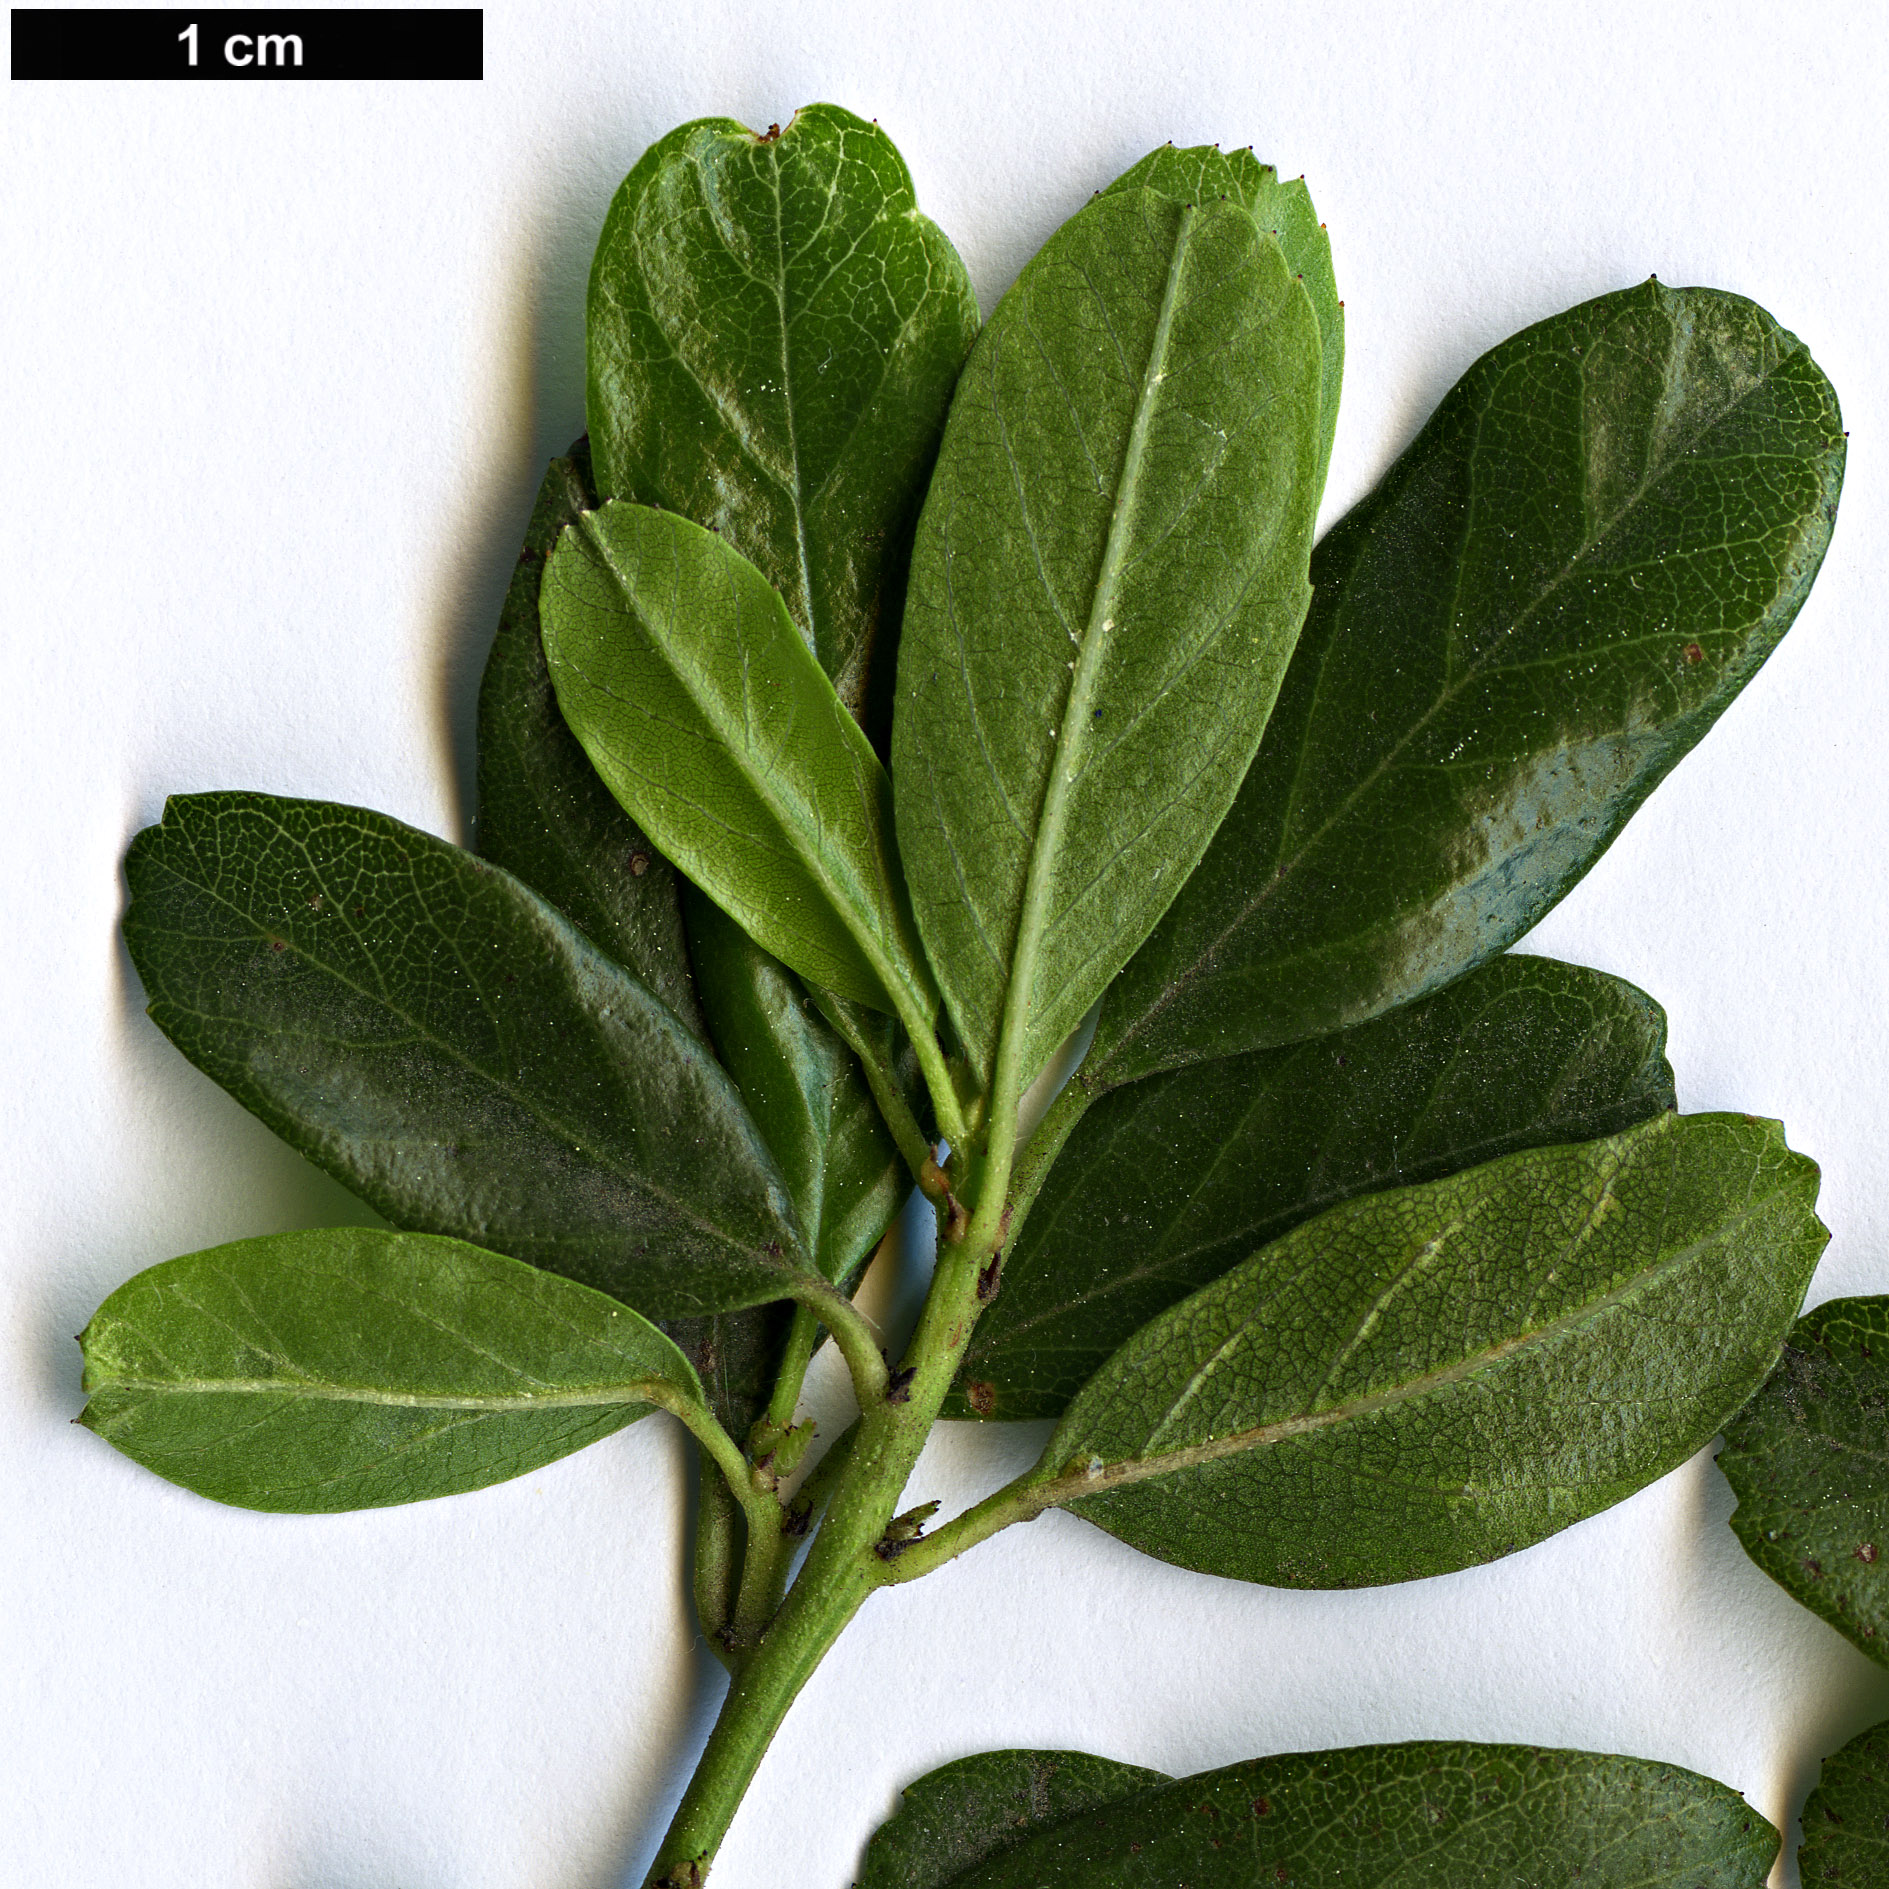 High resolution image: Family: Rhamnaceae - Genus: Ceanothus - Taxon: spinosus